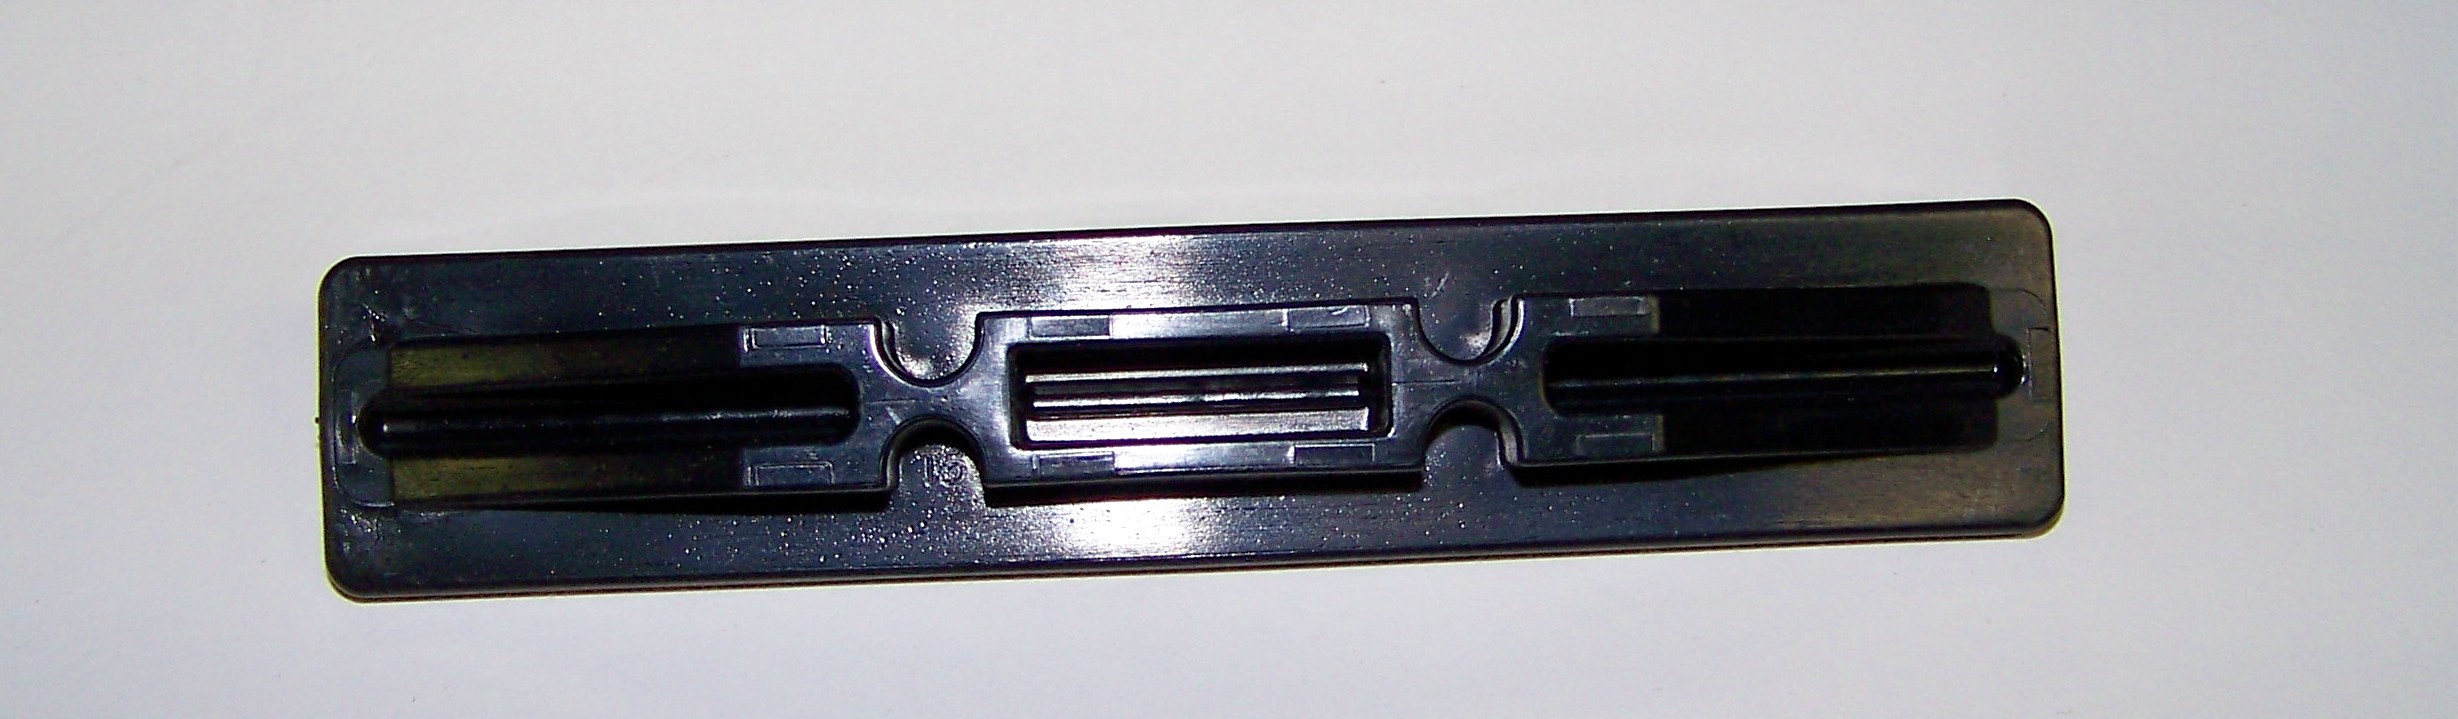 LIFTMASTER Garage Door Opener Rack 81C168 